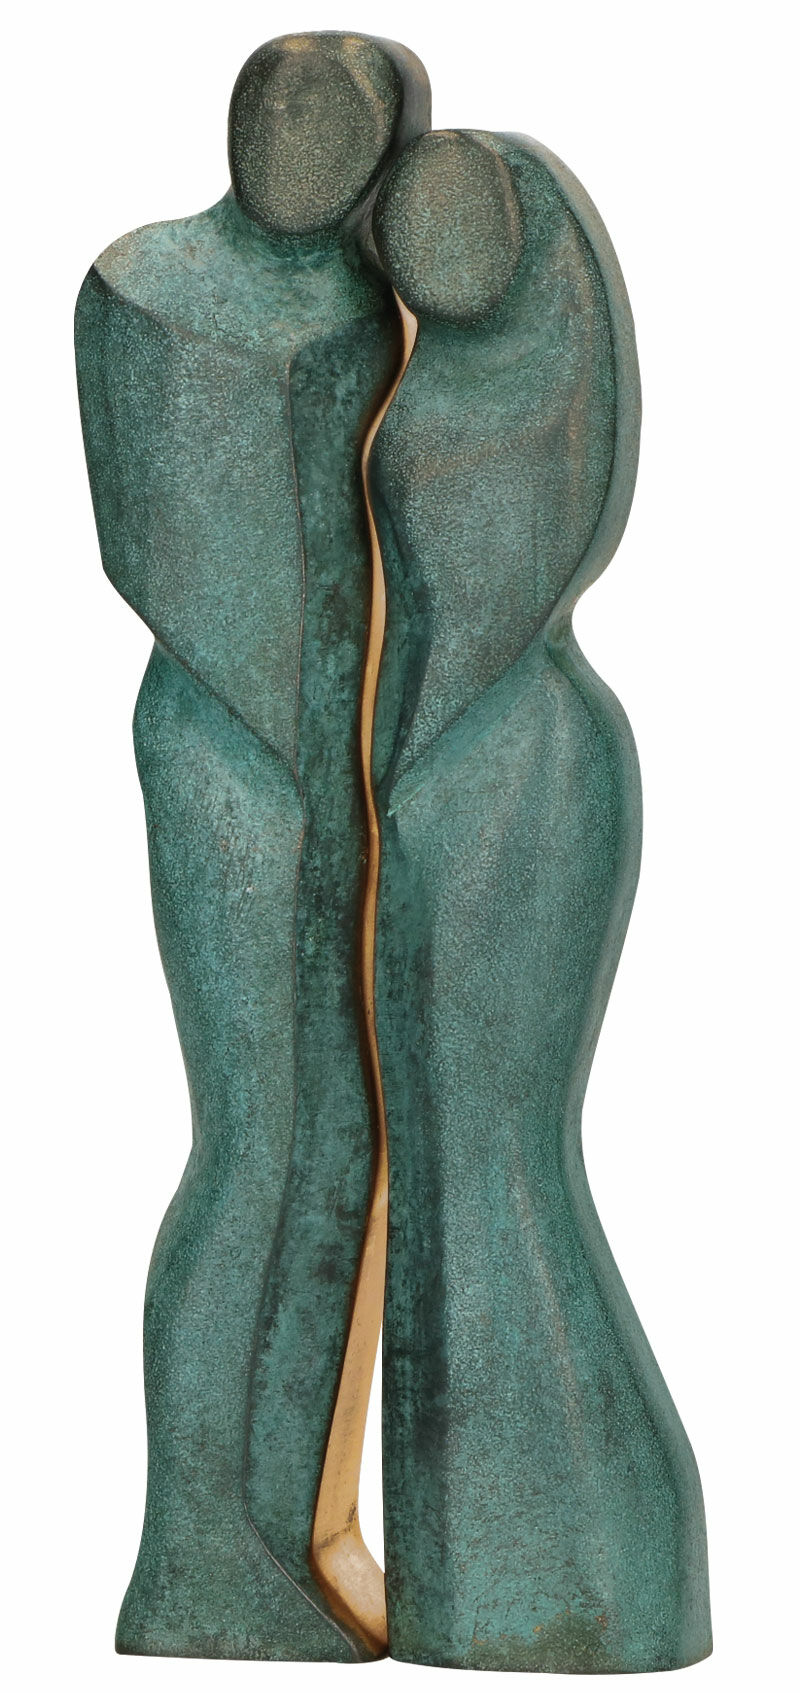 Skulptur "Par", bronze von Stefanie von Quast